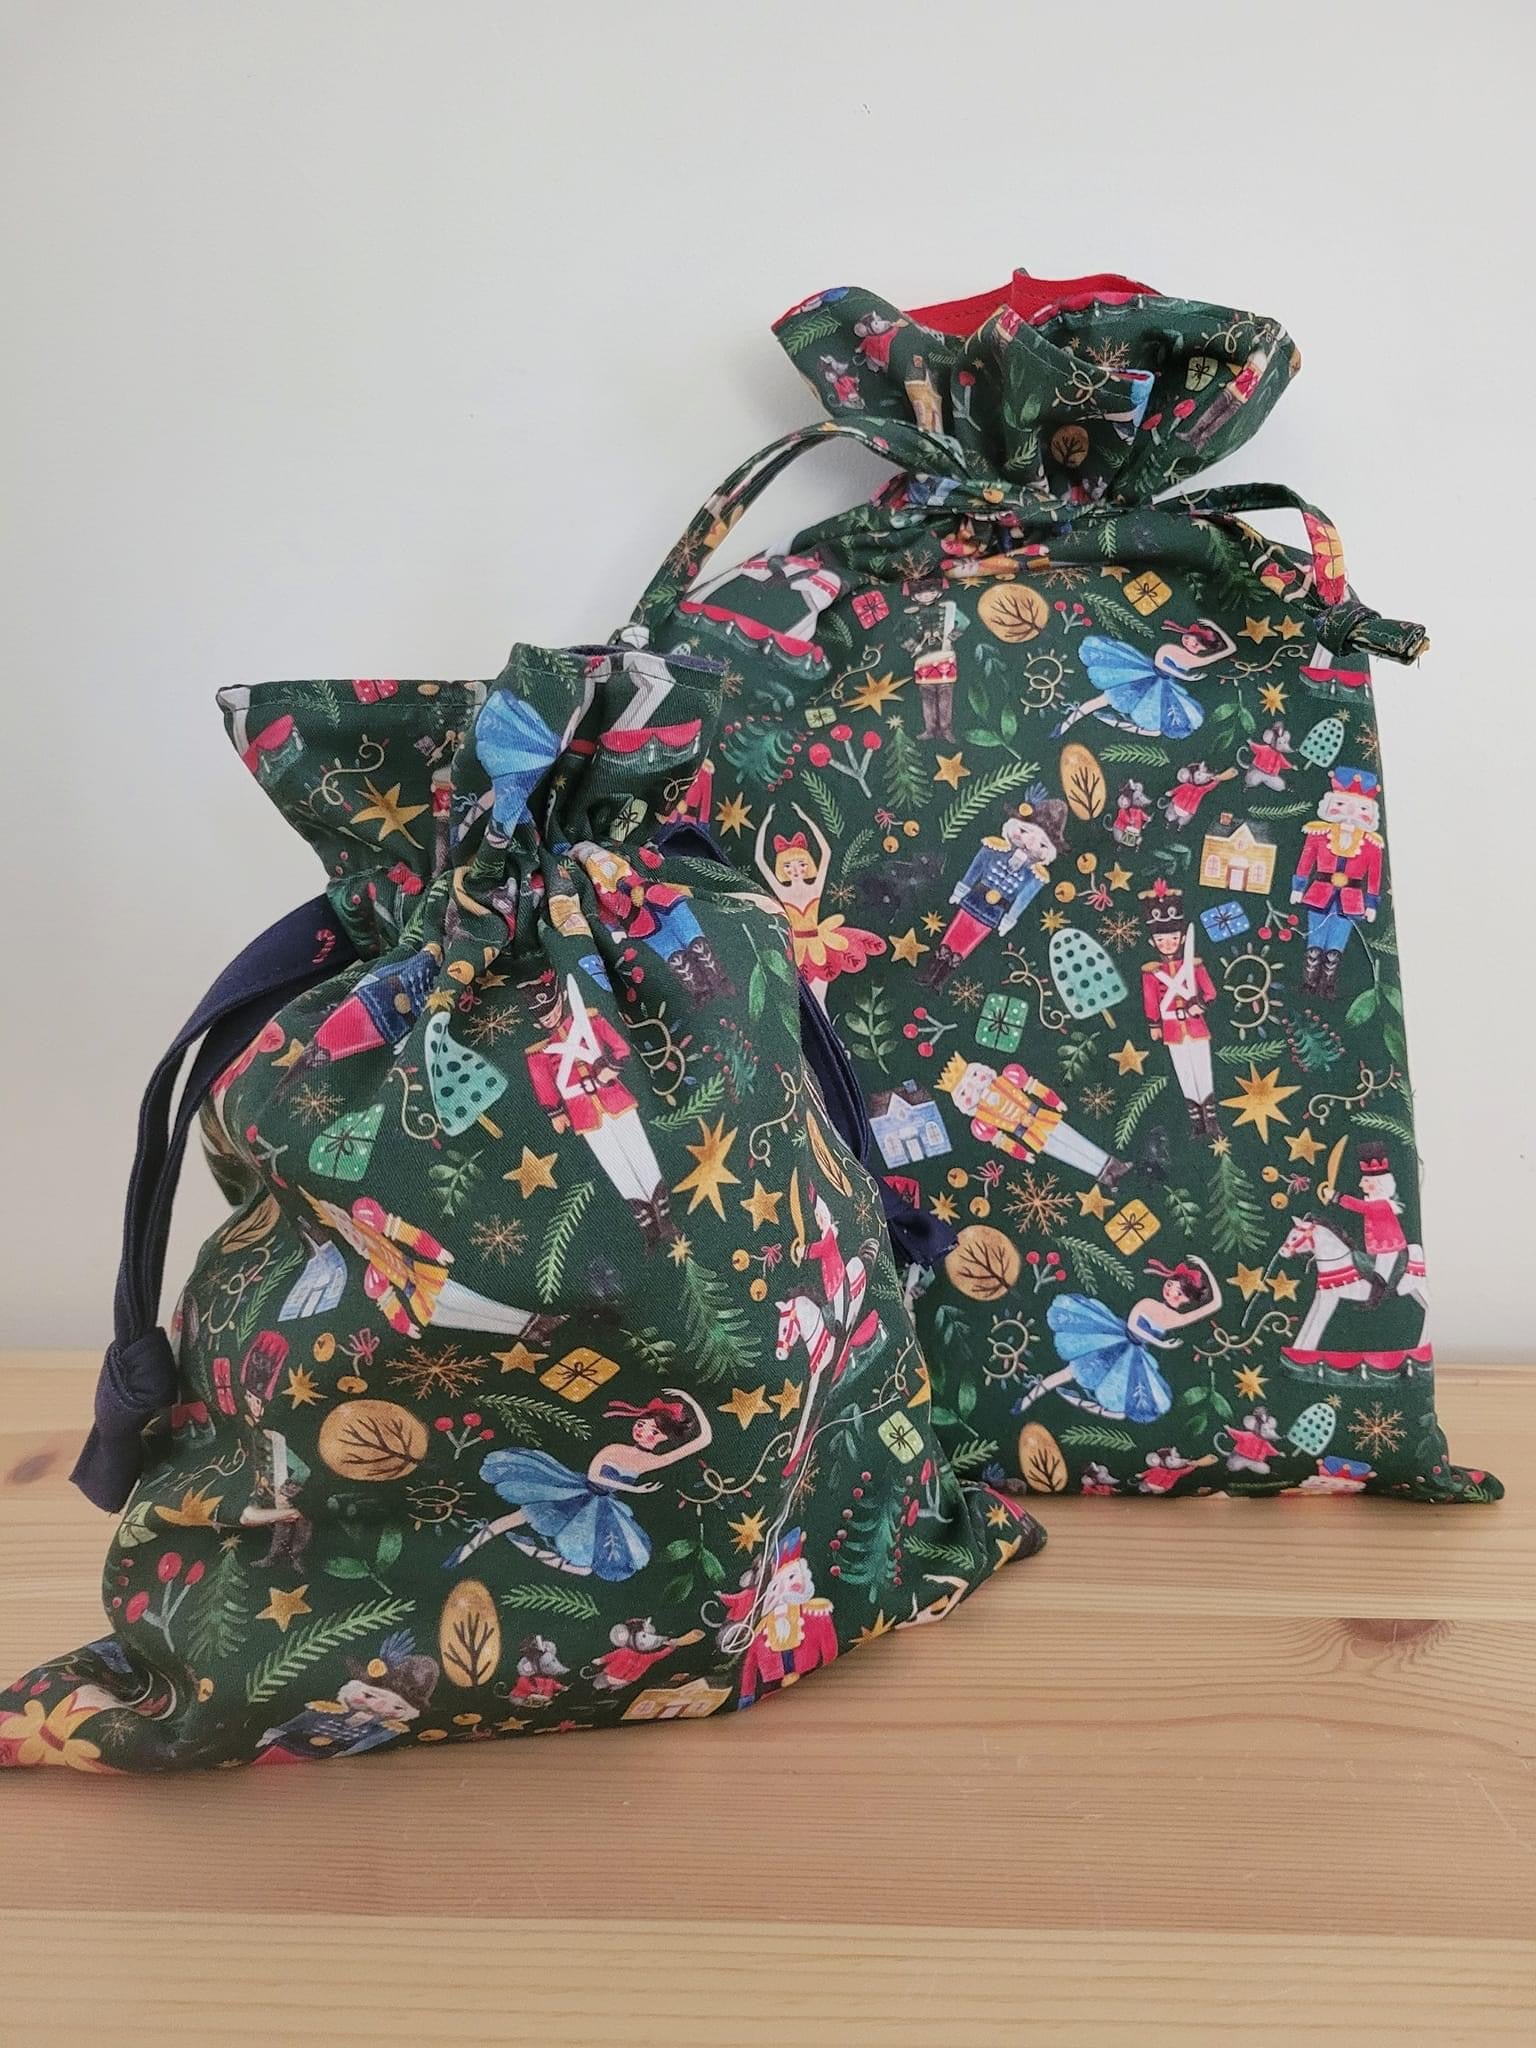 How to make a reusable gift bag